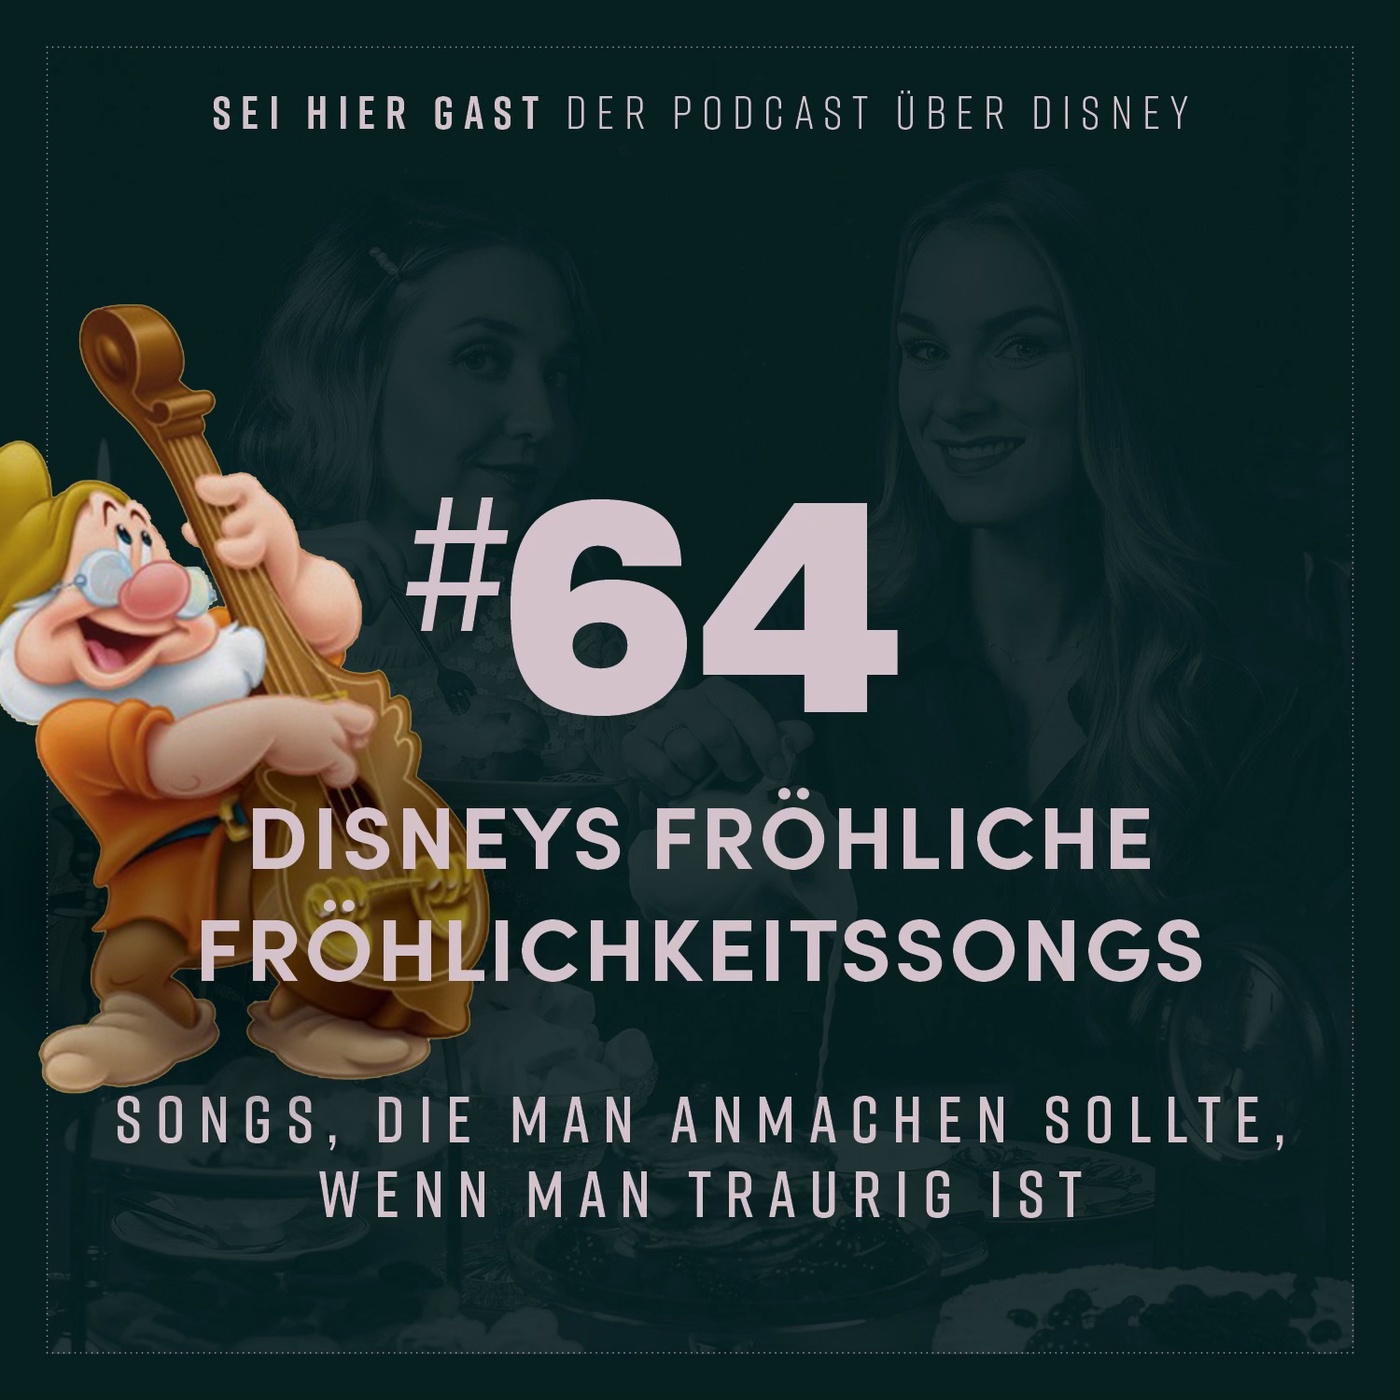 #64 Disneys fröhliche Fröhlichkeitssongs I Songs, die man anmachen sollte, wenn man traurig ist